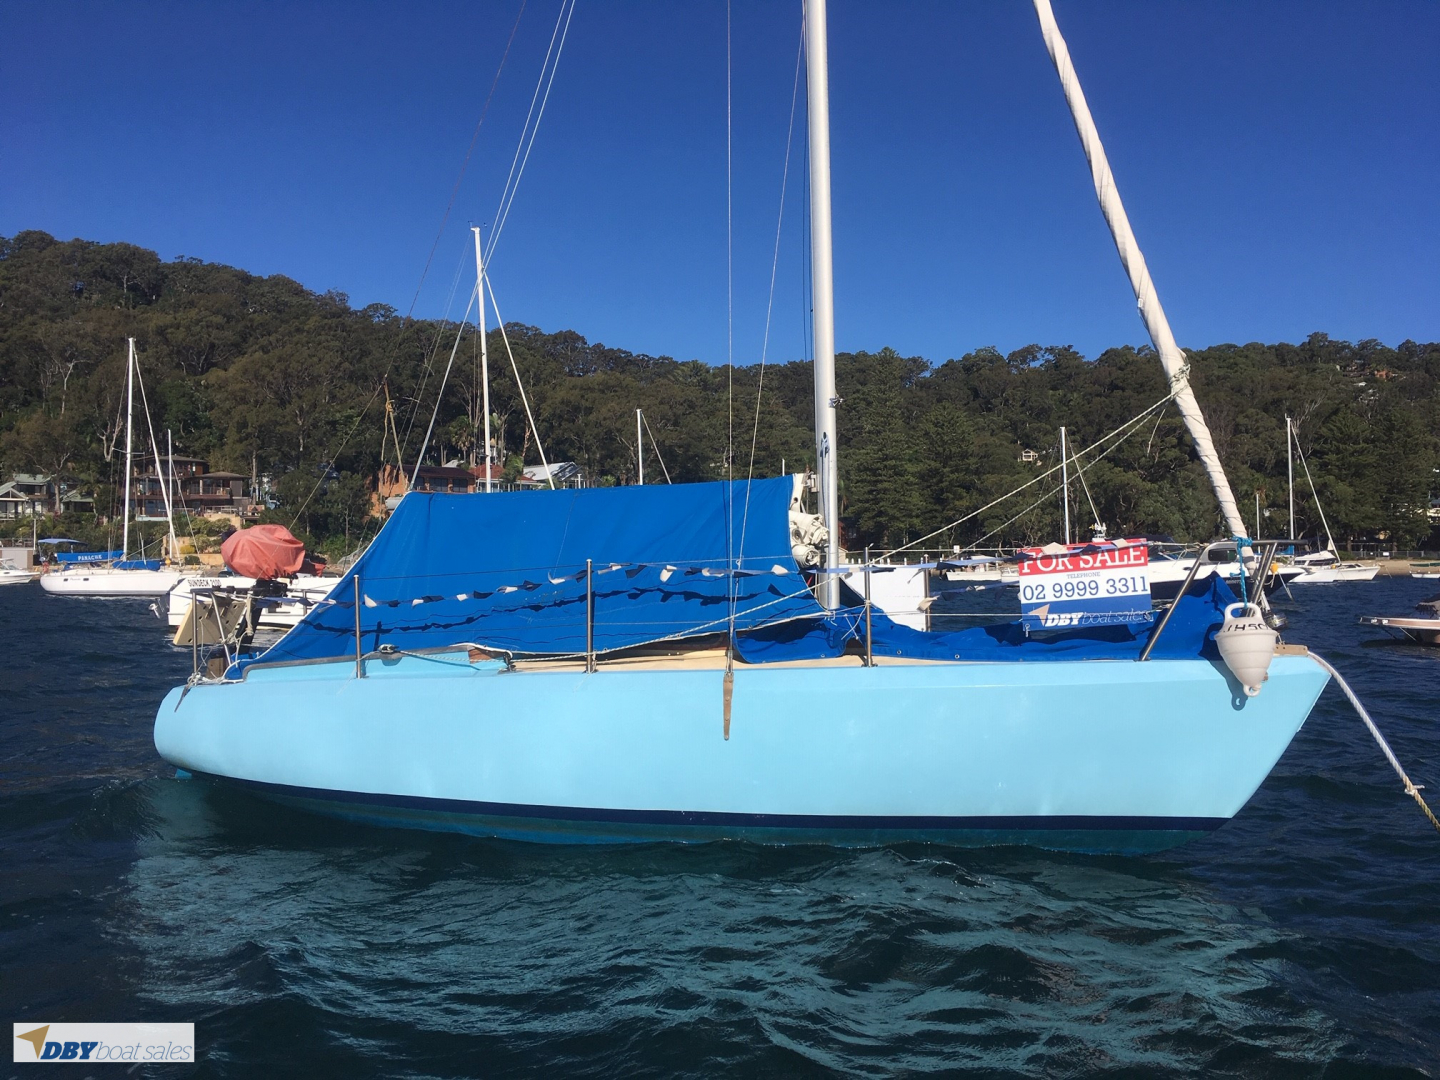 Laurent Giles Trekka 22 foot yacht